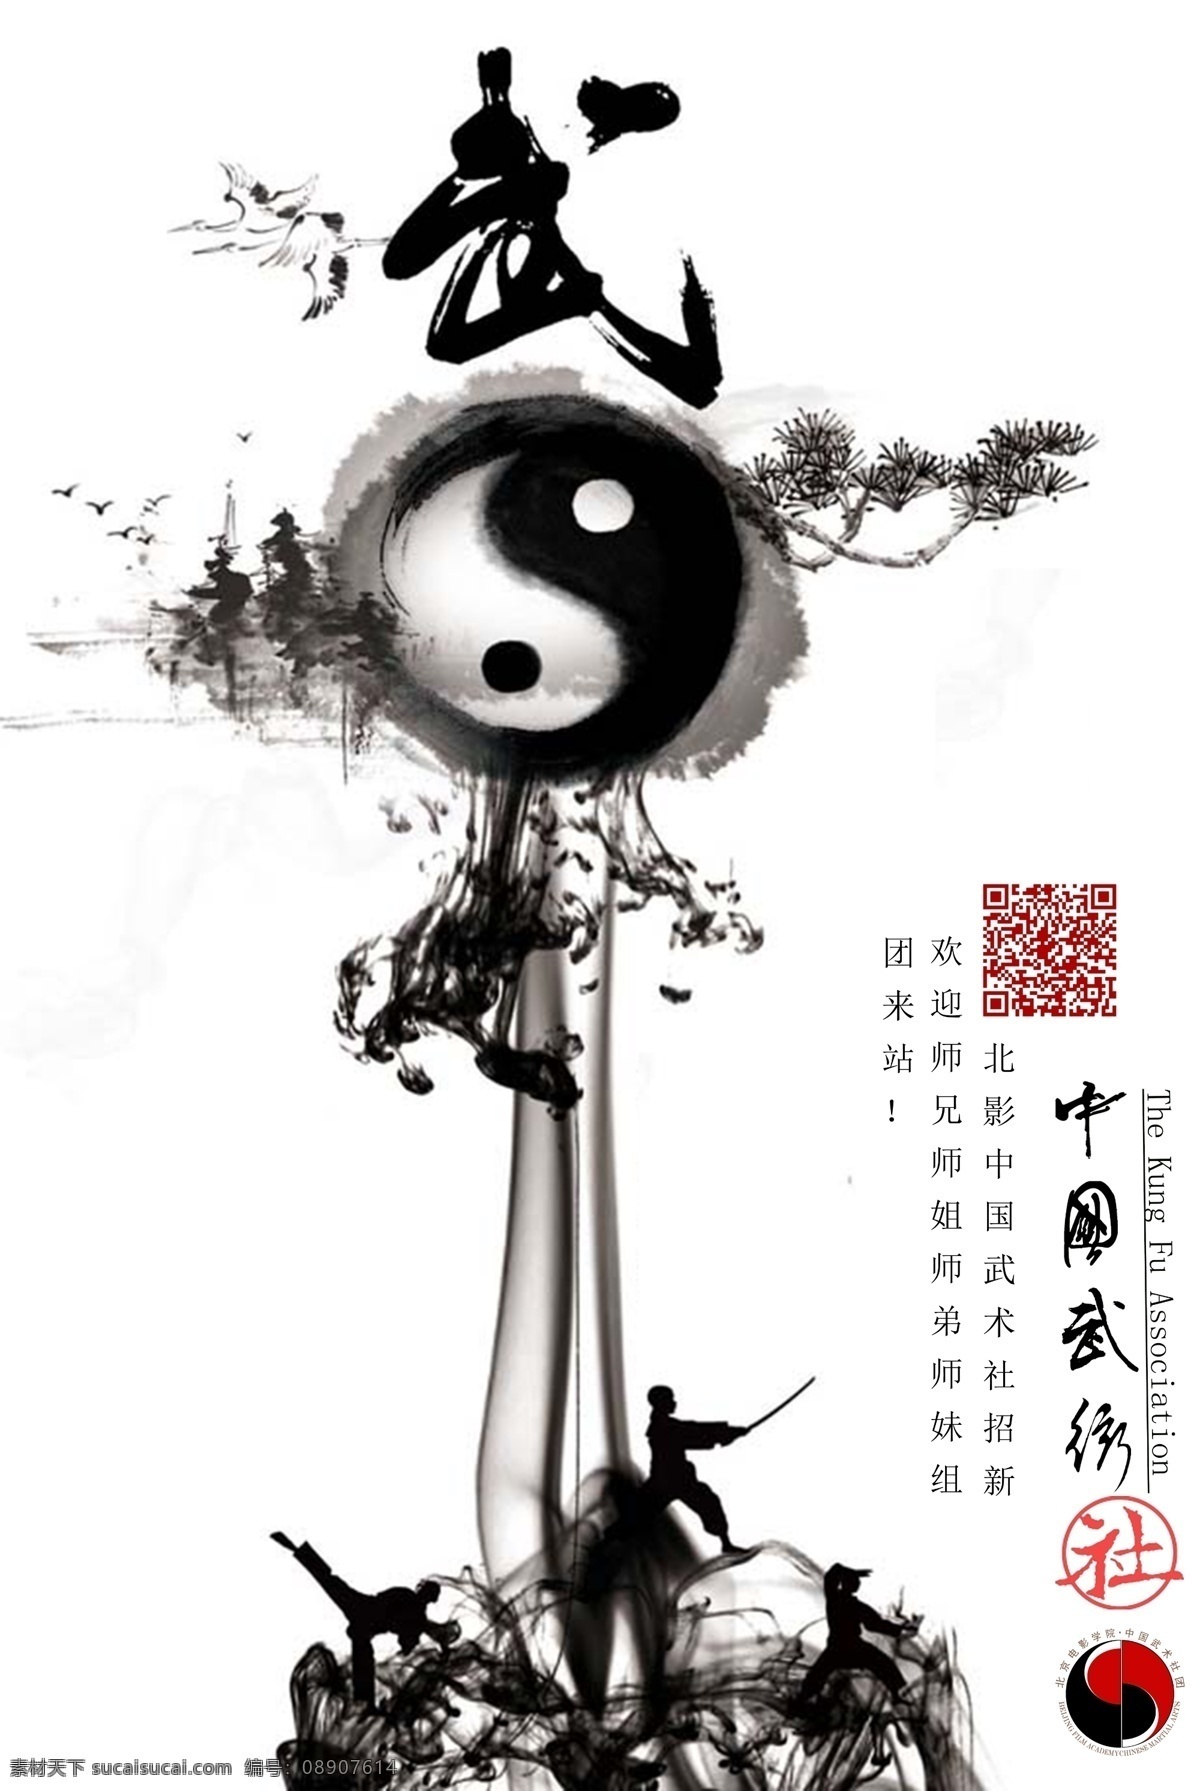 中国武术海报 八卦 武术 宣传 社团 简洁 阴阳 海报 水墨 社团宣传